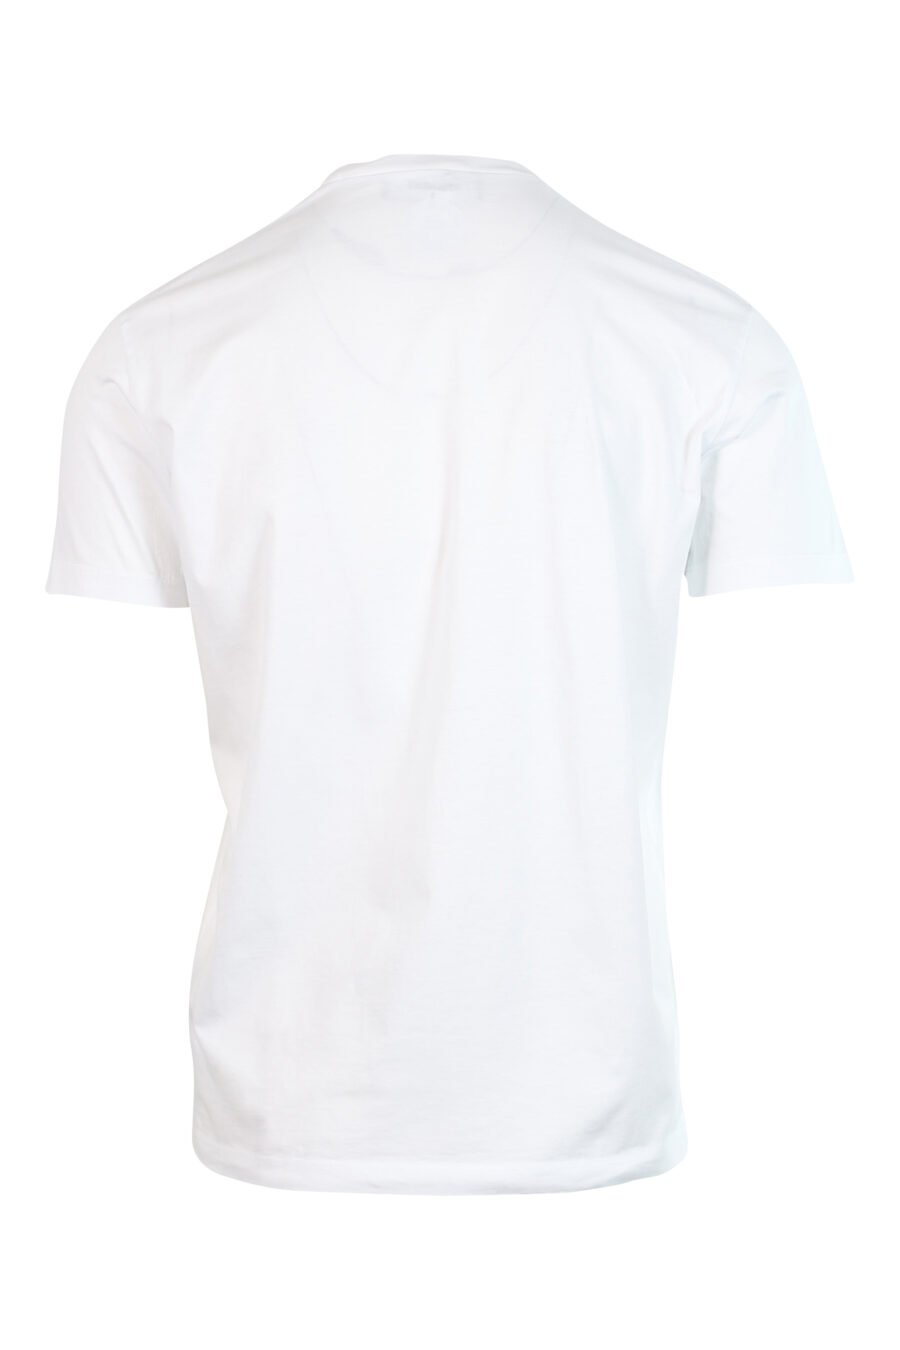 Weißes T-Shirt mit Maxilogo "Icon Herz Pixel" - 8052134980842 2